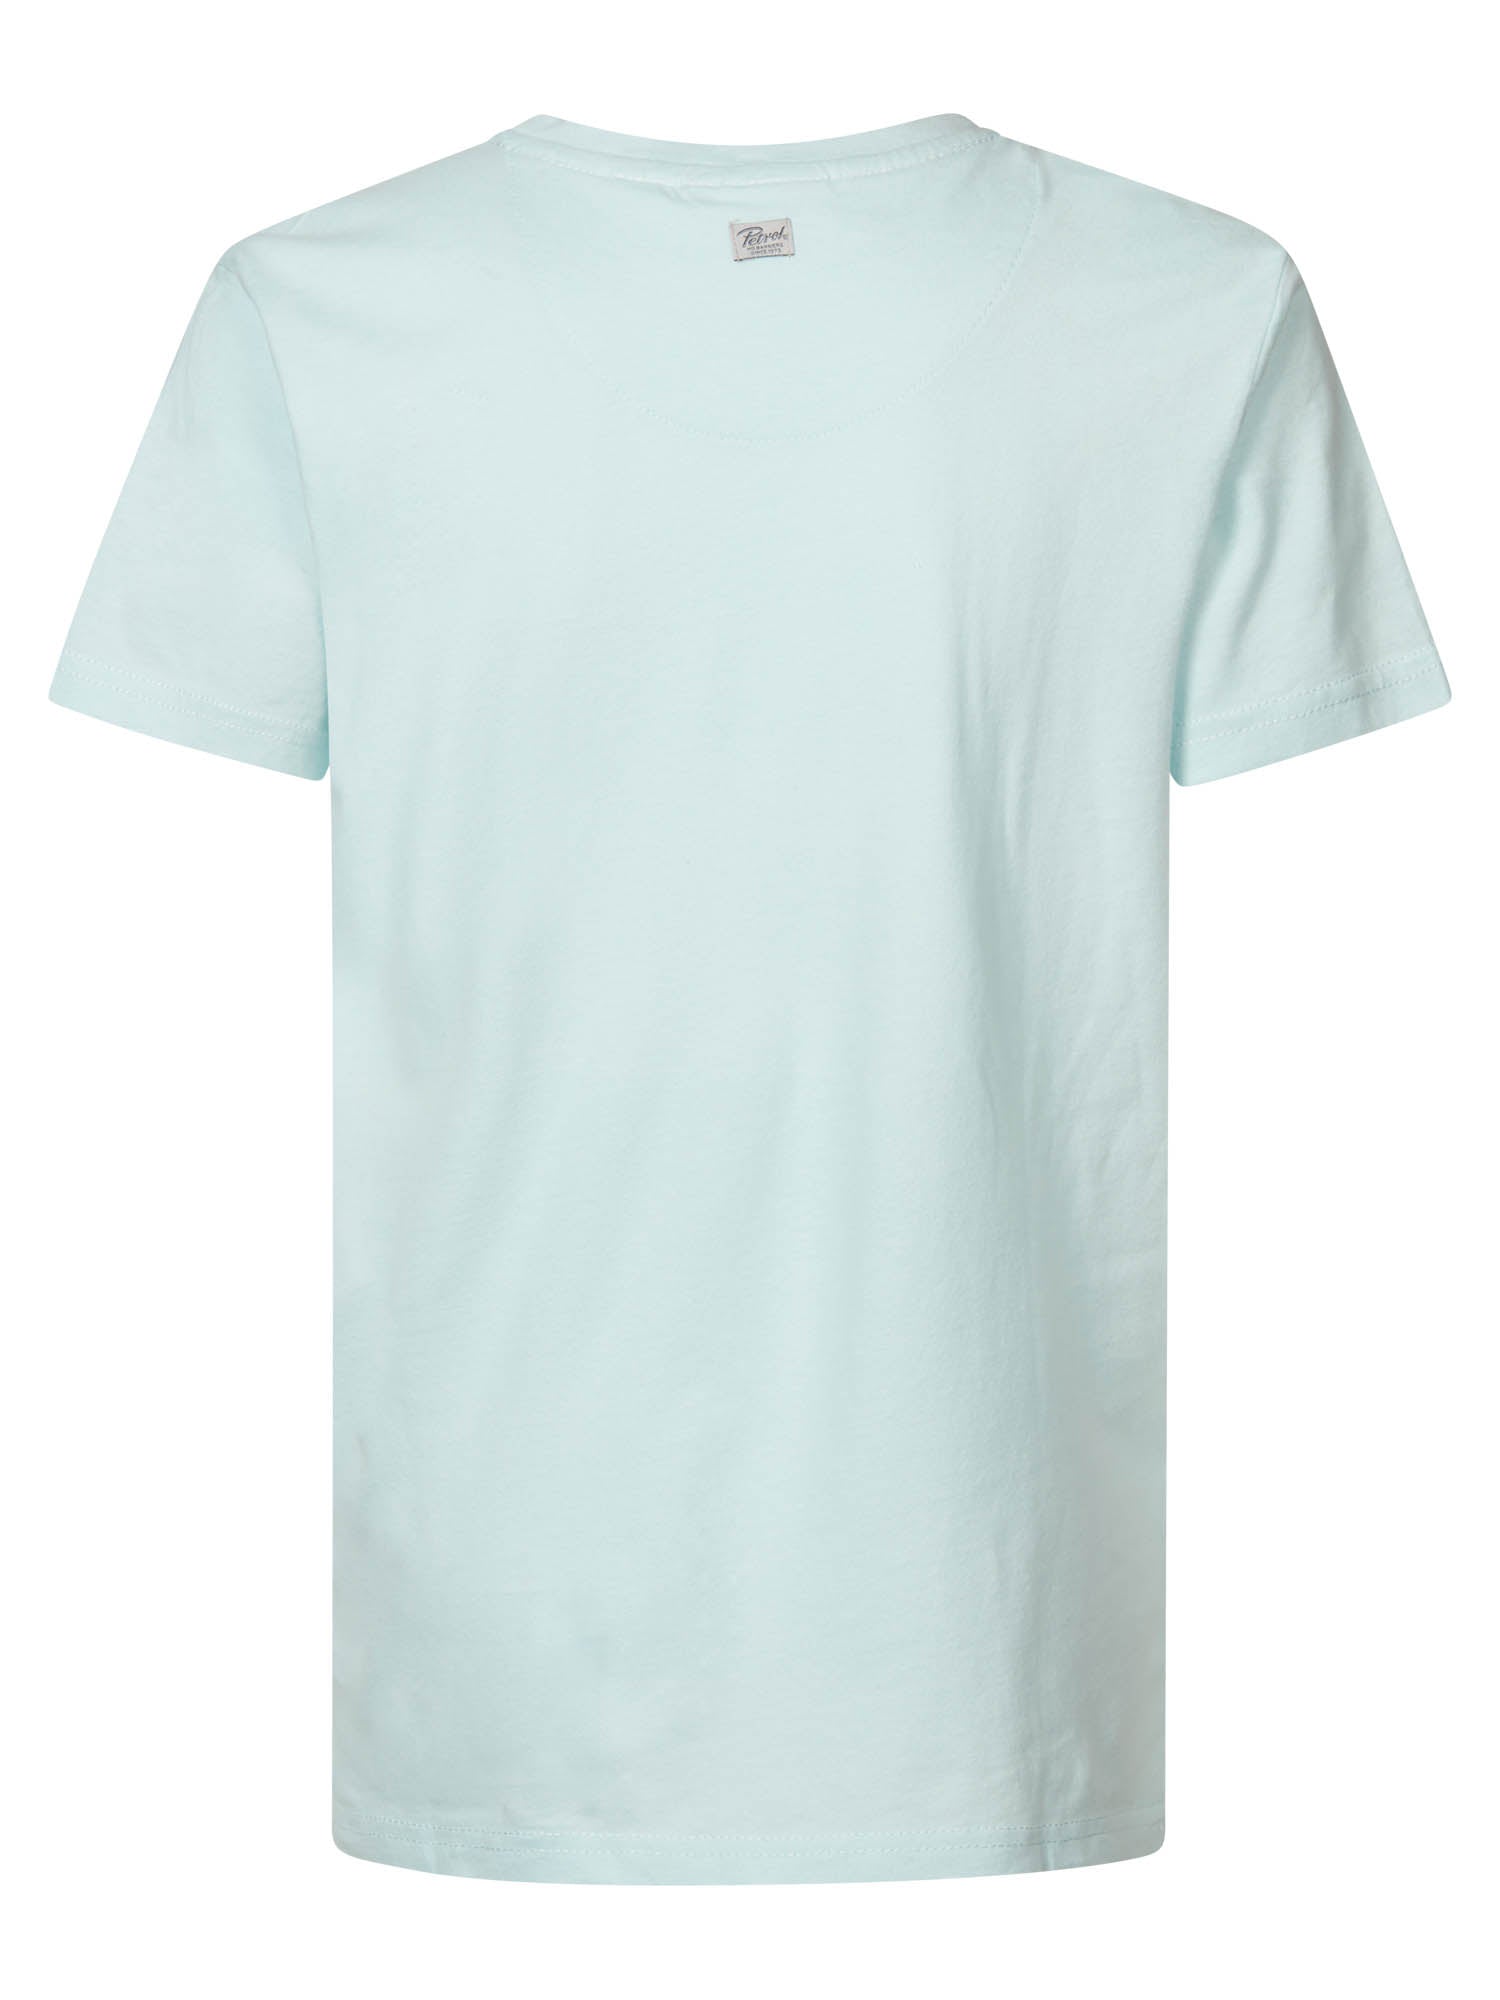 Jongens T-shirt   van Petrol in de kleur Survival Blue in maat 176.